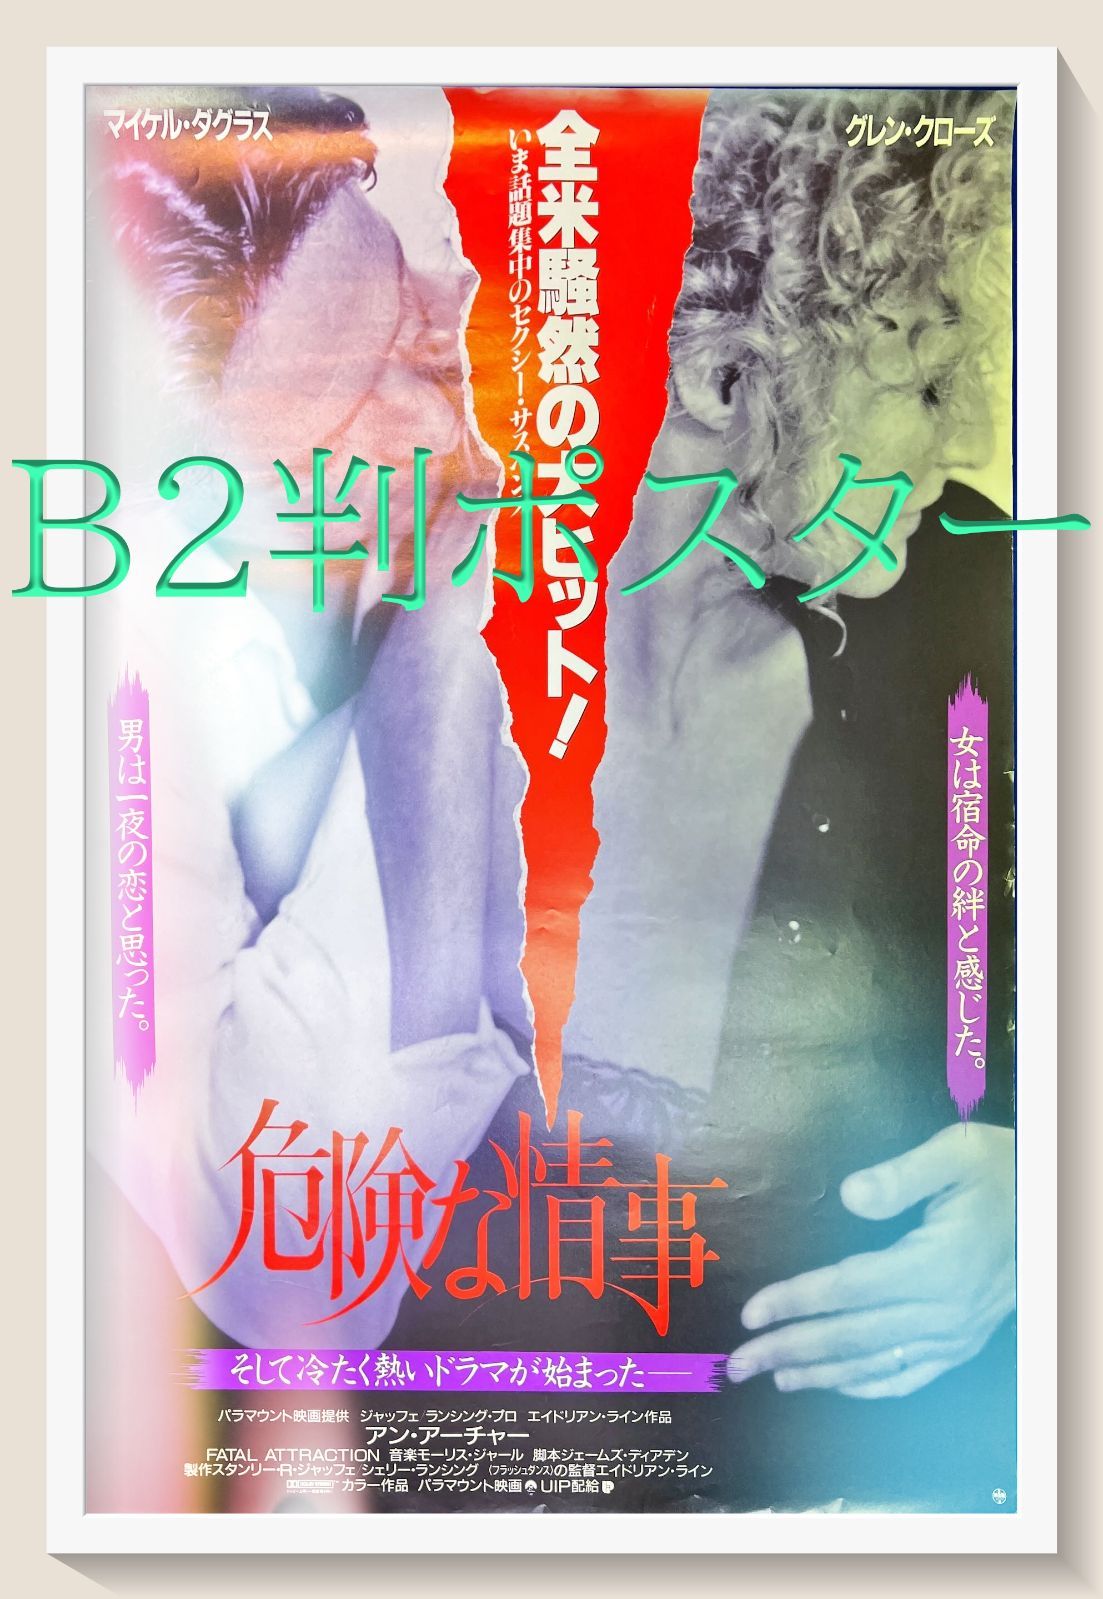 『危険な情事』映画B2判オリジナルポスター